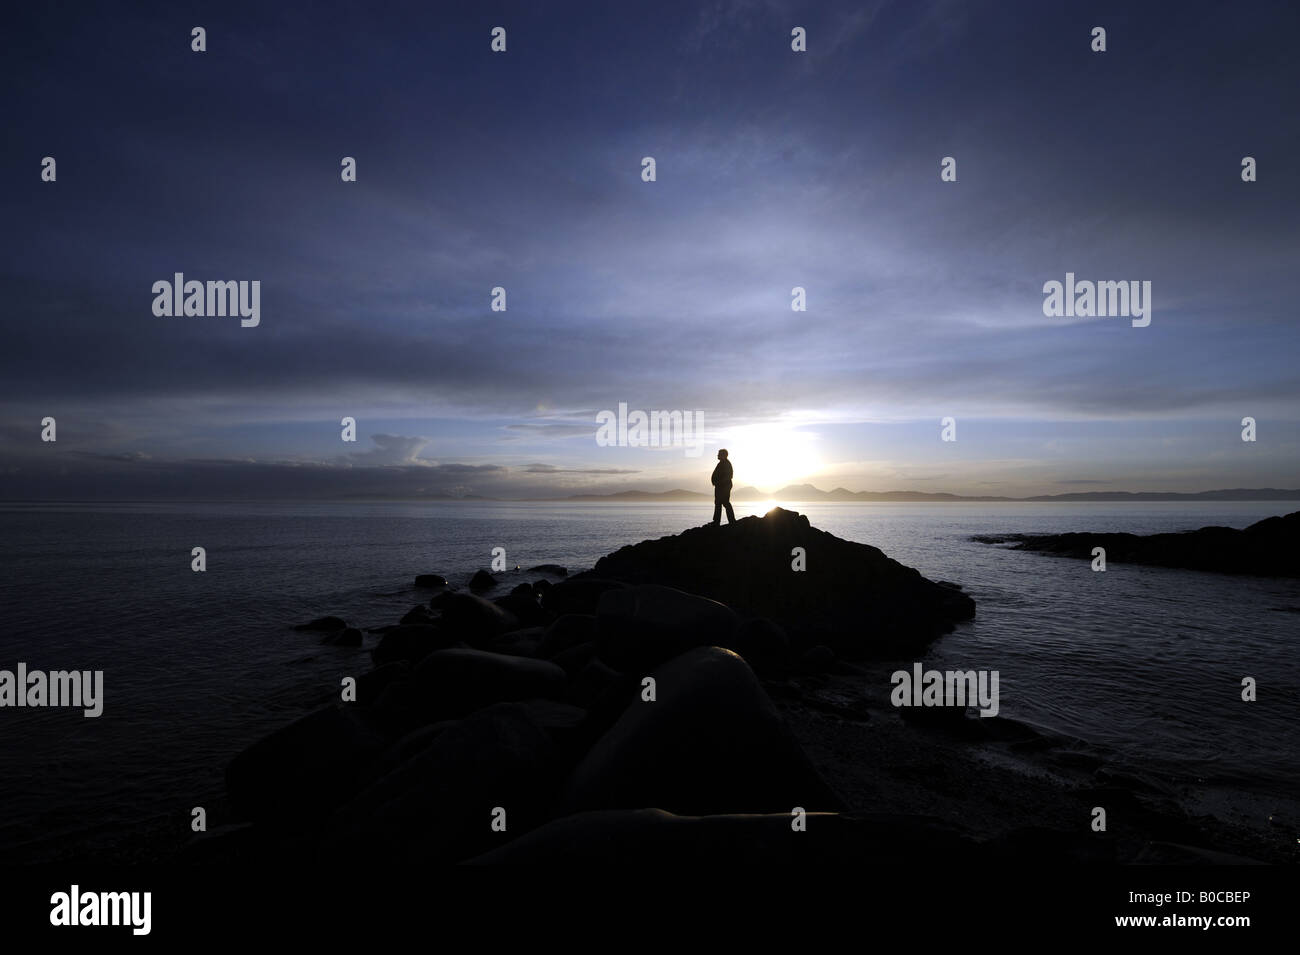 Une personne regarde un coucher de soleil spectaculaire SUR LA CÔTE DE KINTYRE À L'ENSEMBLE DE L'ÎLE DE JURA, Ecosse, Royaume-Uni. Banque D'Images